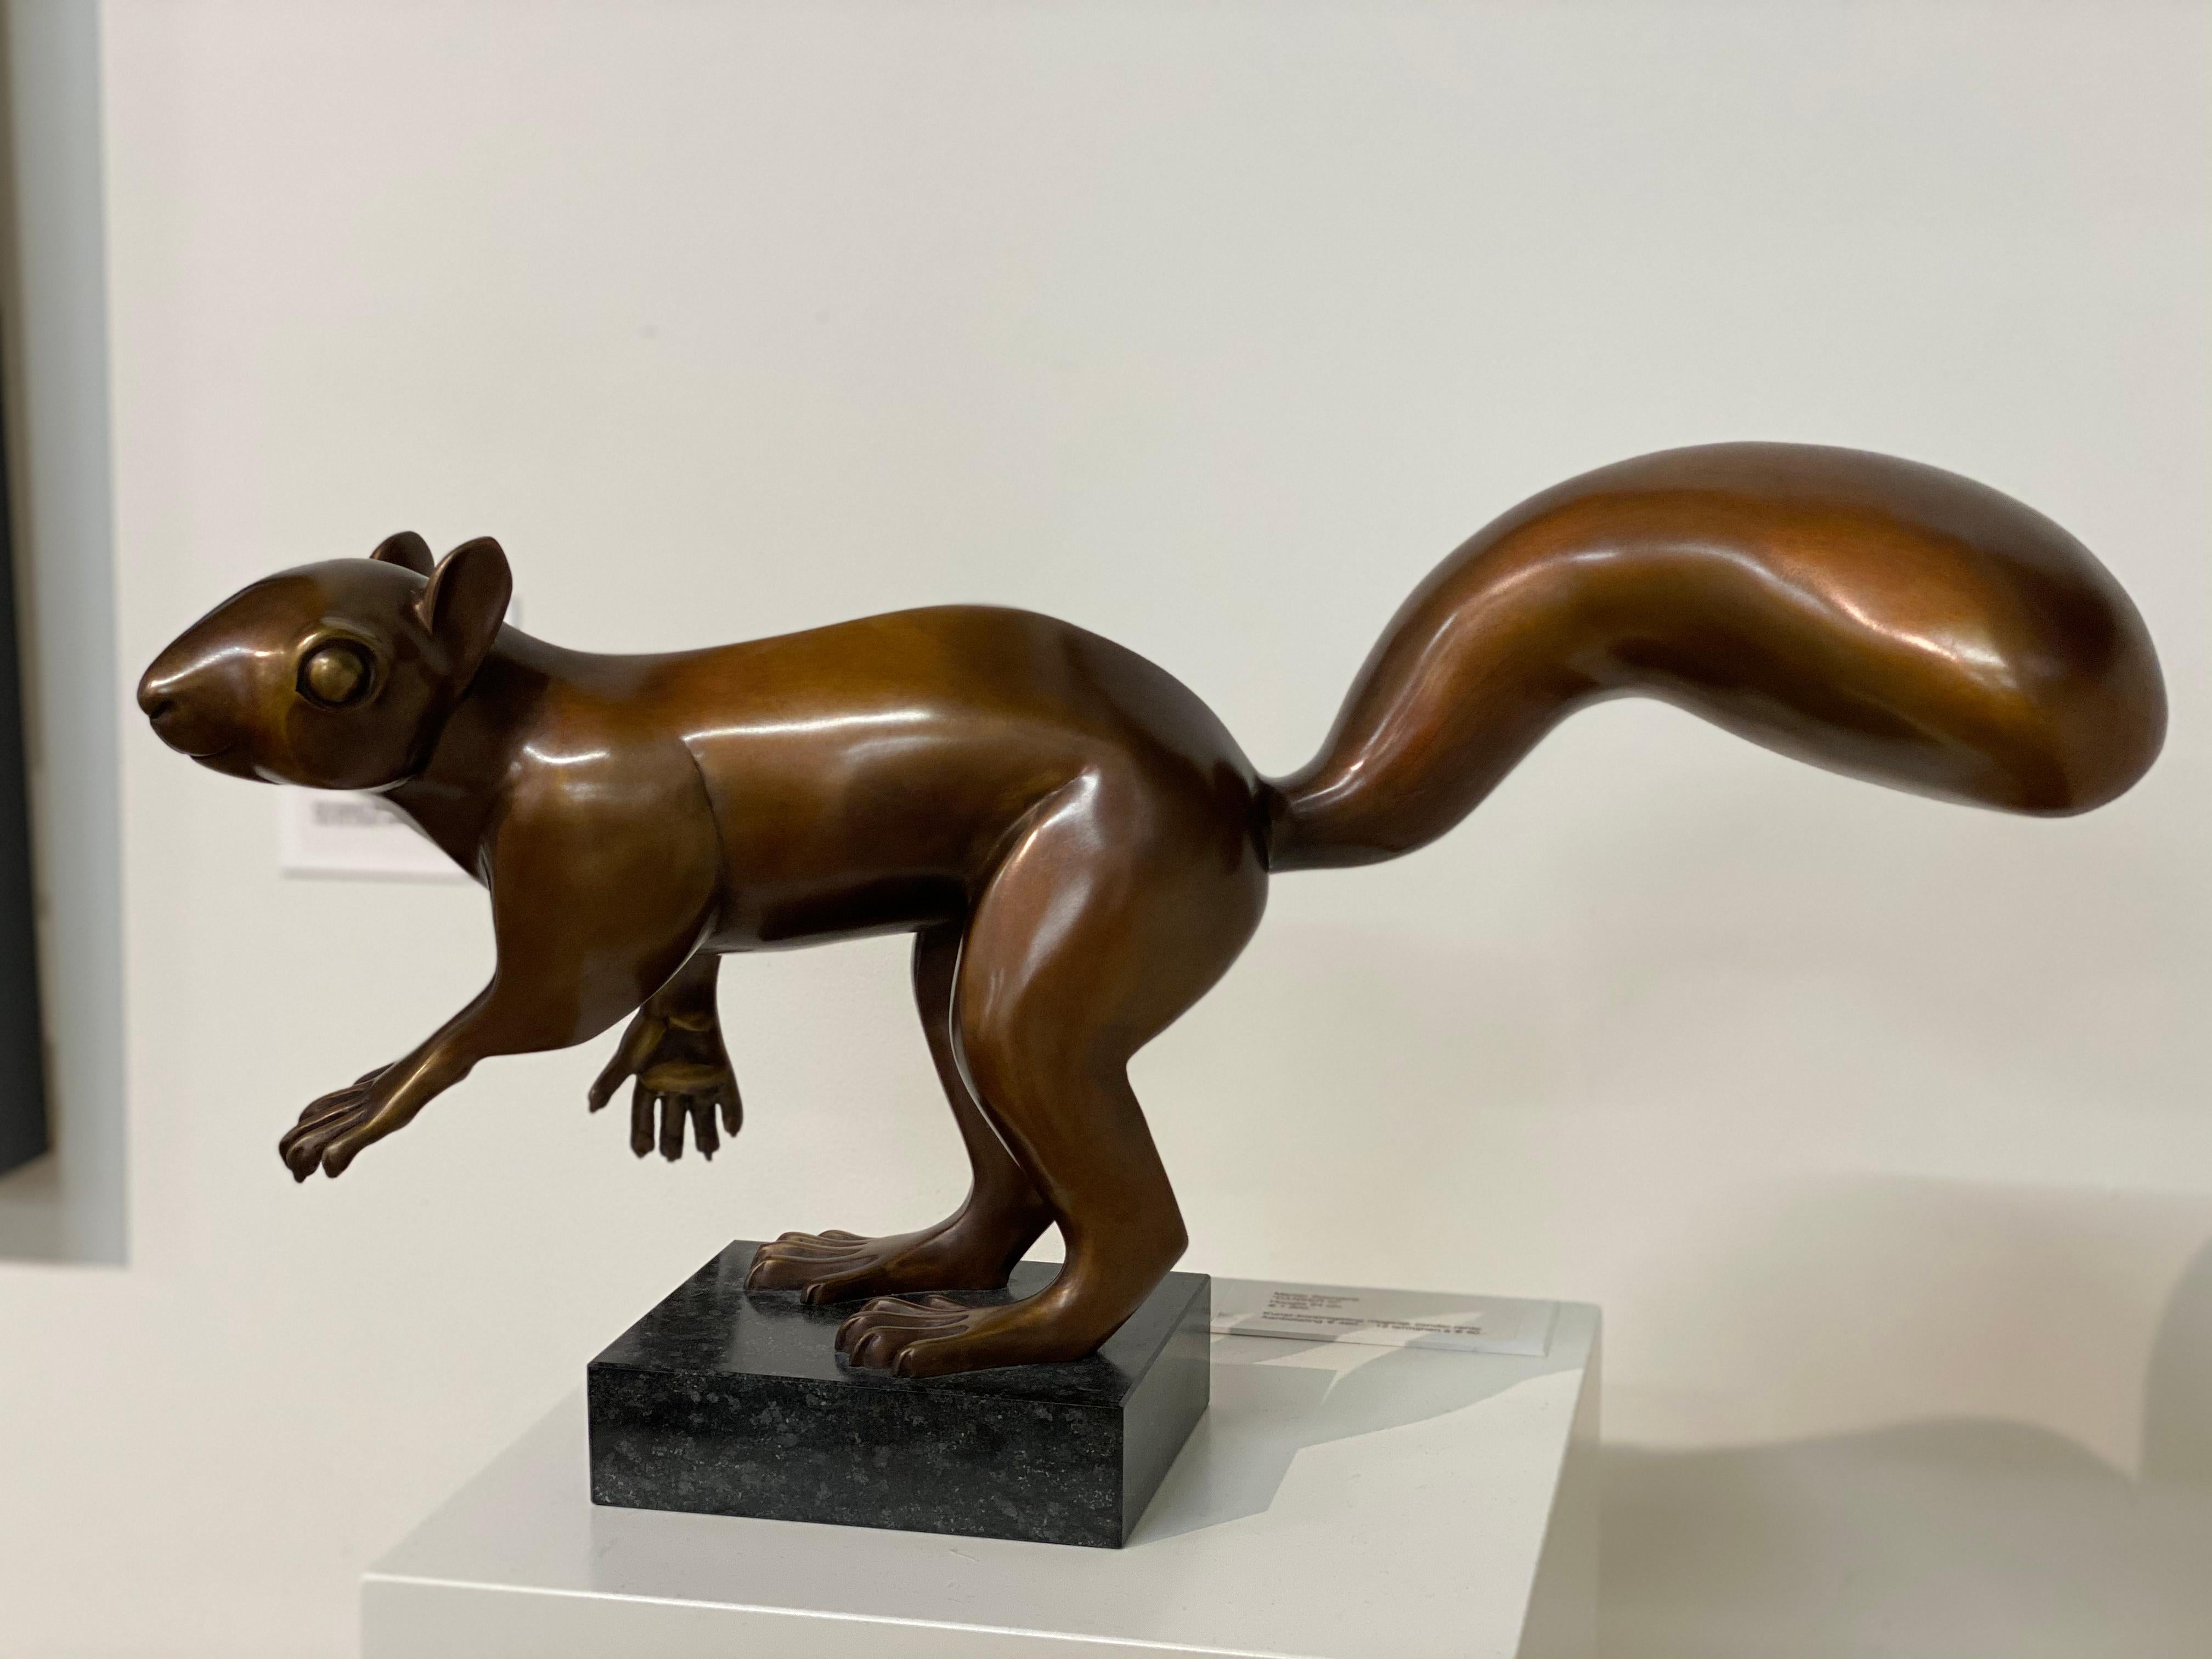 Dieses Eichhörnchen stammt von dem niederländischen Künstler Frans van Straaten.

Van Straaten sollte als ein Künstler des Gleichgewichts bezeichnet werden, der immer auf der Suche nach Harmonie zwischen Kraft und Bewegung in Kombination mit dem